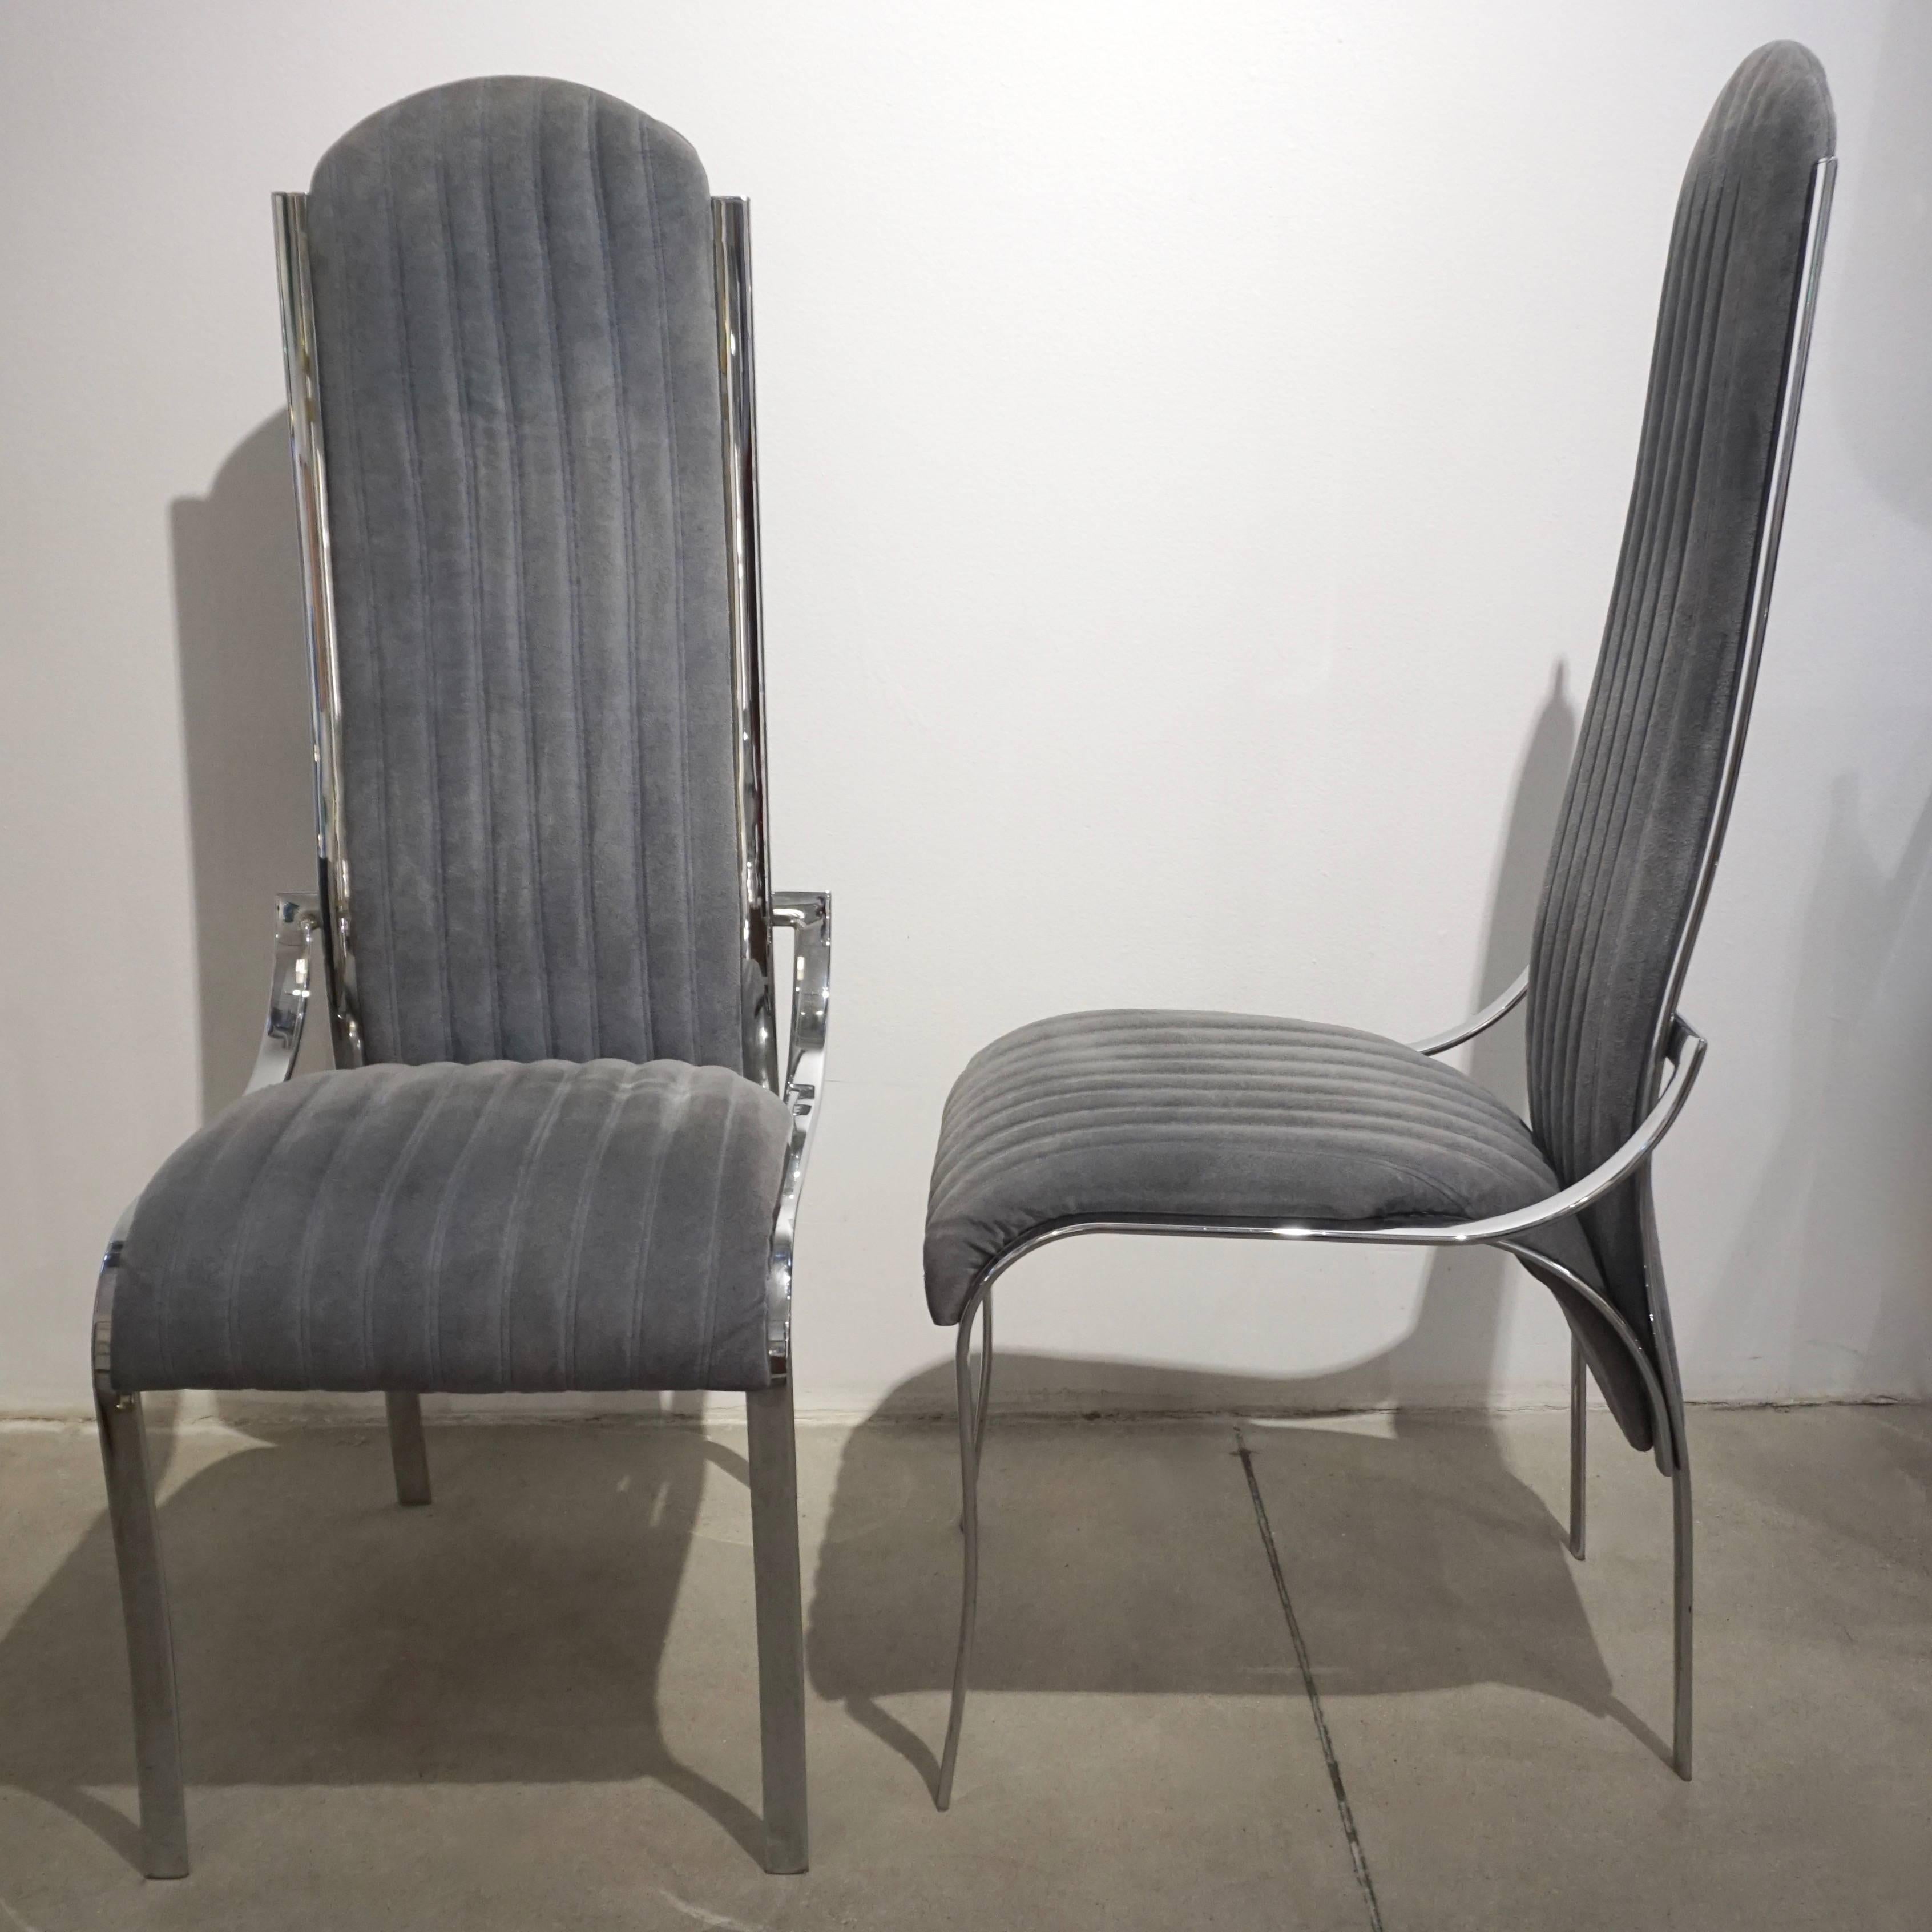 Italienisches Mid-Century Modern Set aus vier verchromten Stühlen mit sinnlichem Design. Die vorderen Beine kommen an den Seiten und in einem durchgehenden Design nach oben, um eine Stütze für die geschwungene hohe Rückenlehne zu schaffen, die Sitze